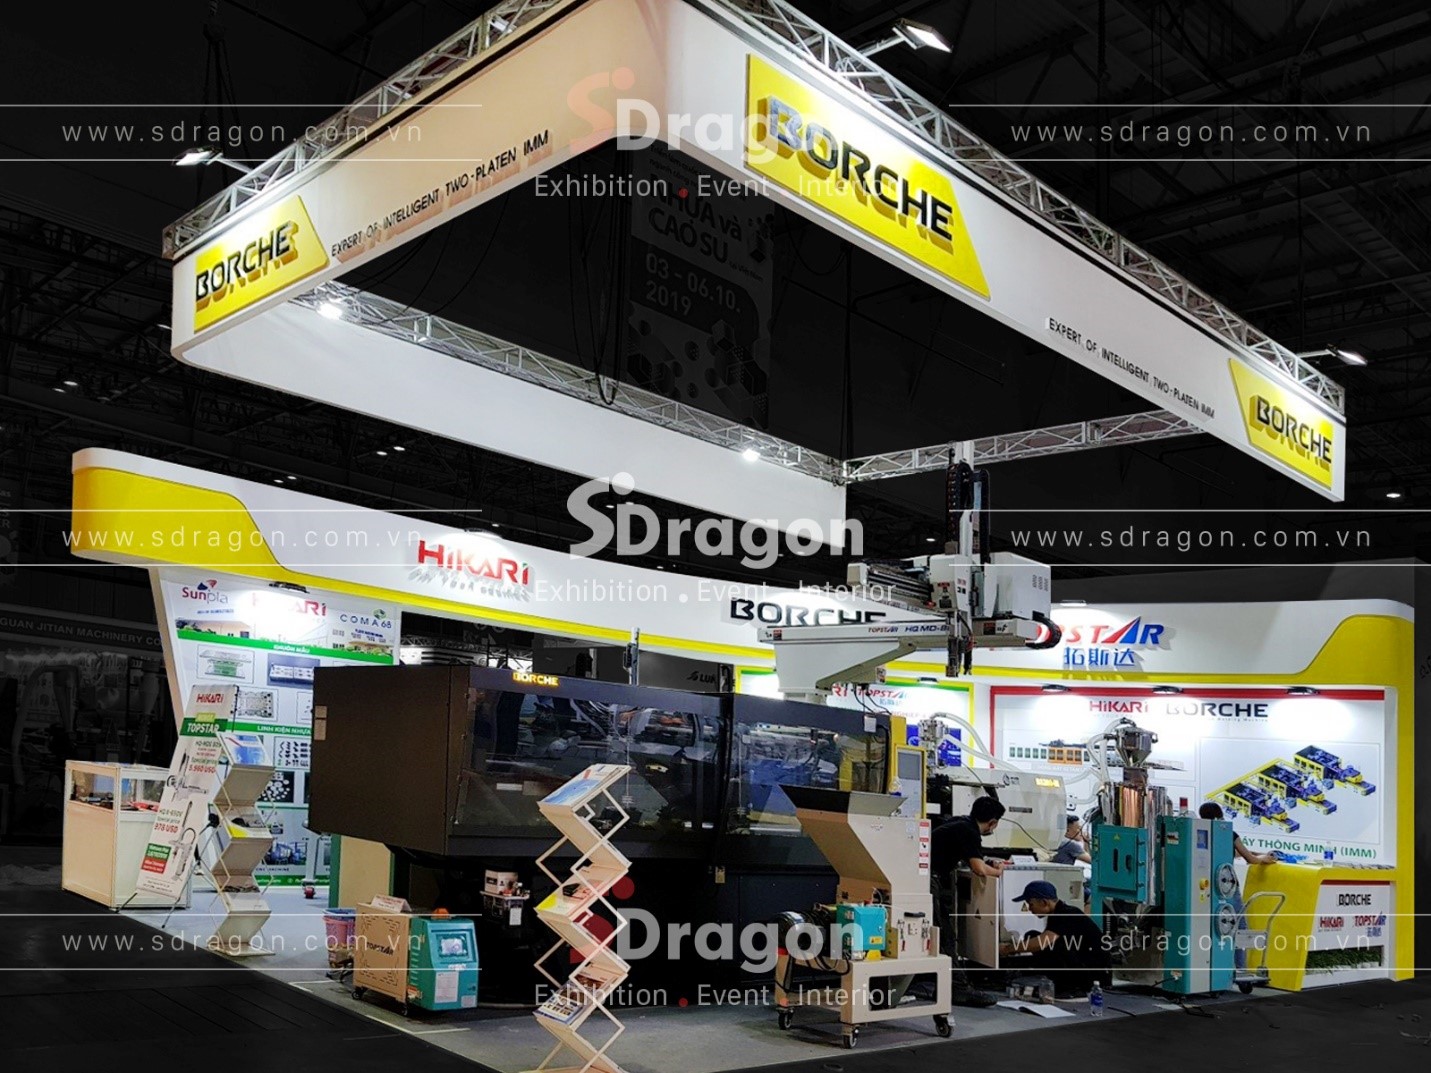 SDragon đảm bảo nhất cho chất lượng và tính thẩm mỹ của gian hàng triển lãm